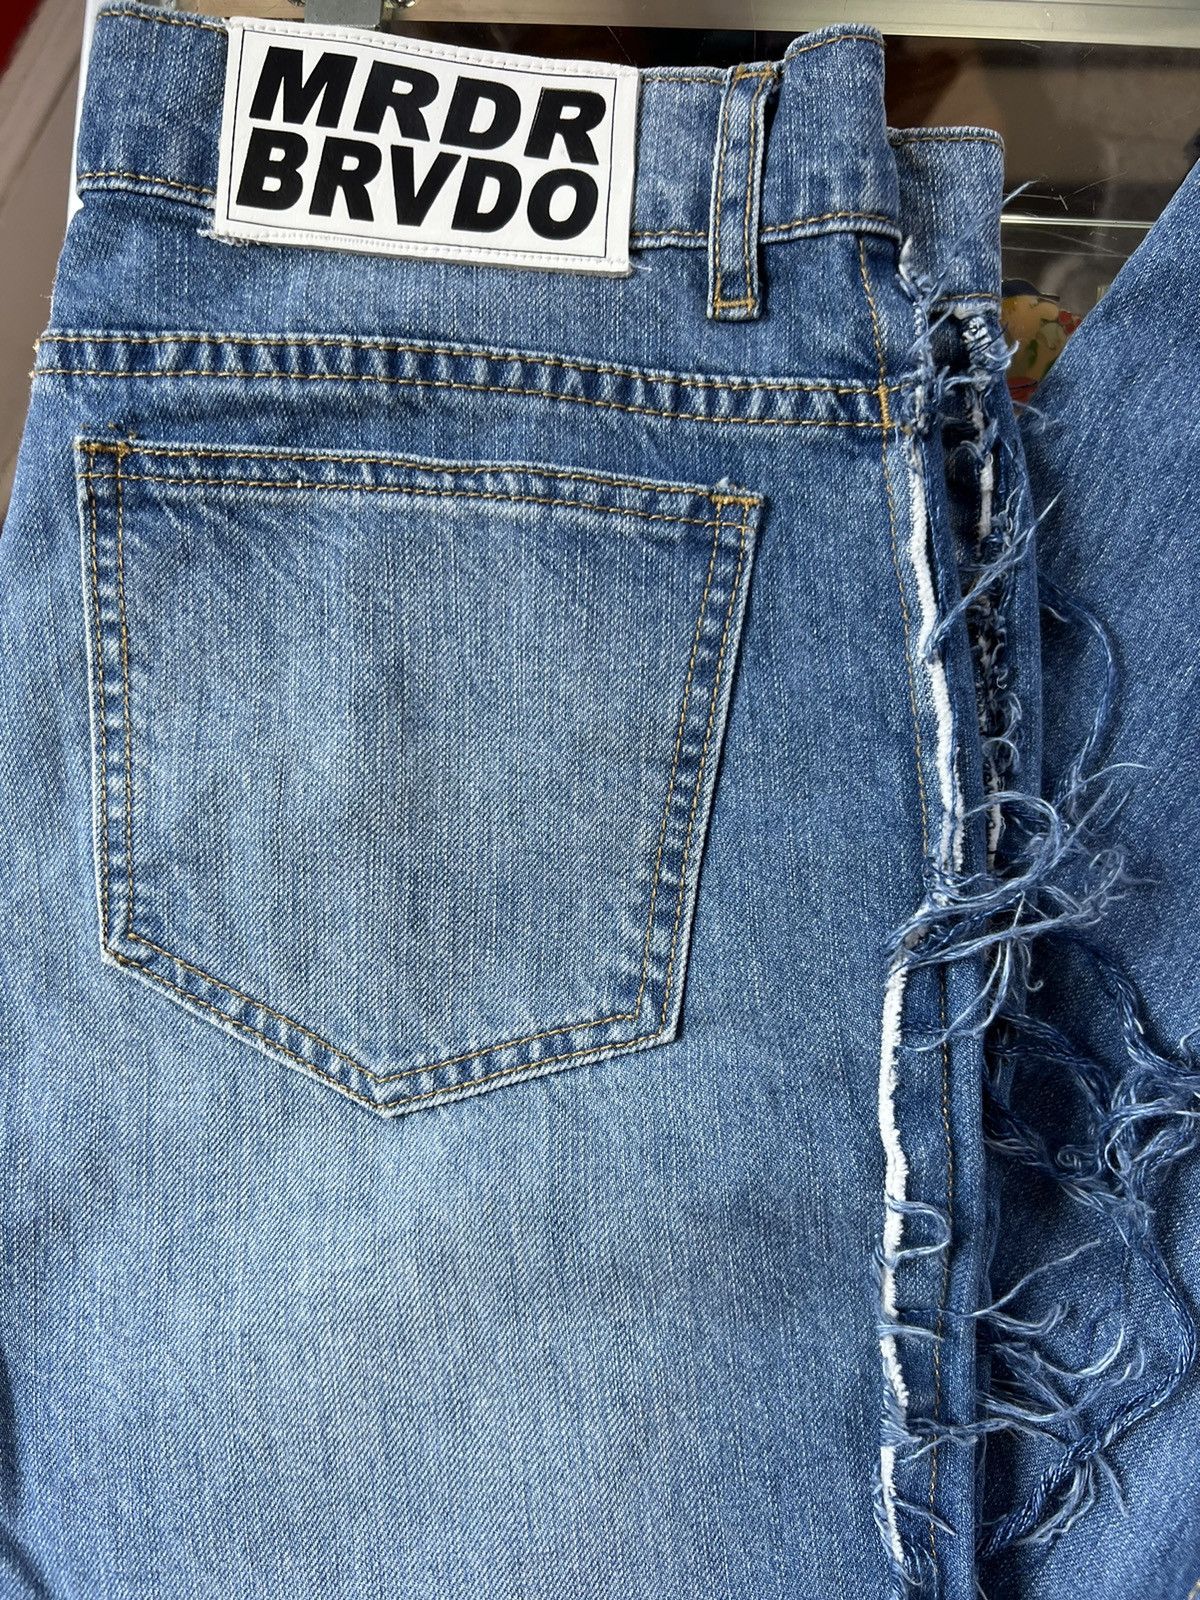 Ev Bravado Murder Bravado Jeans | Grailed